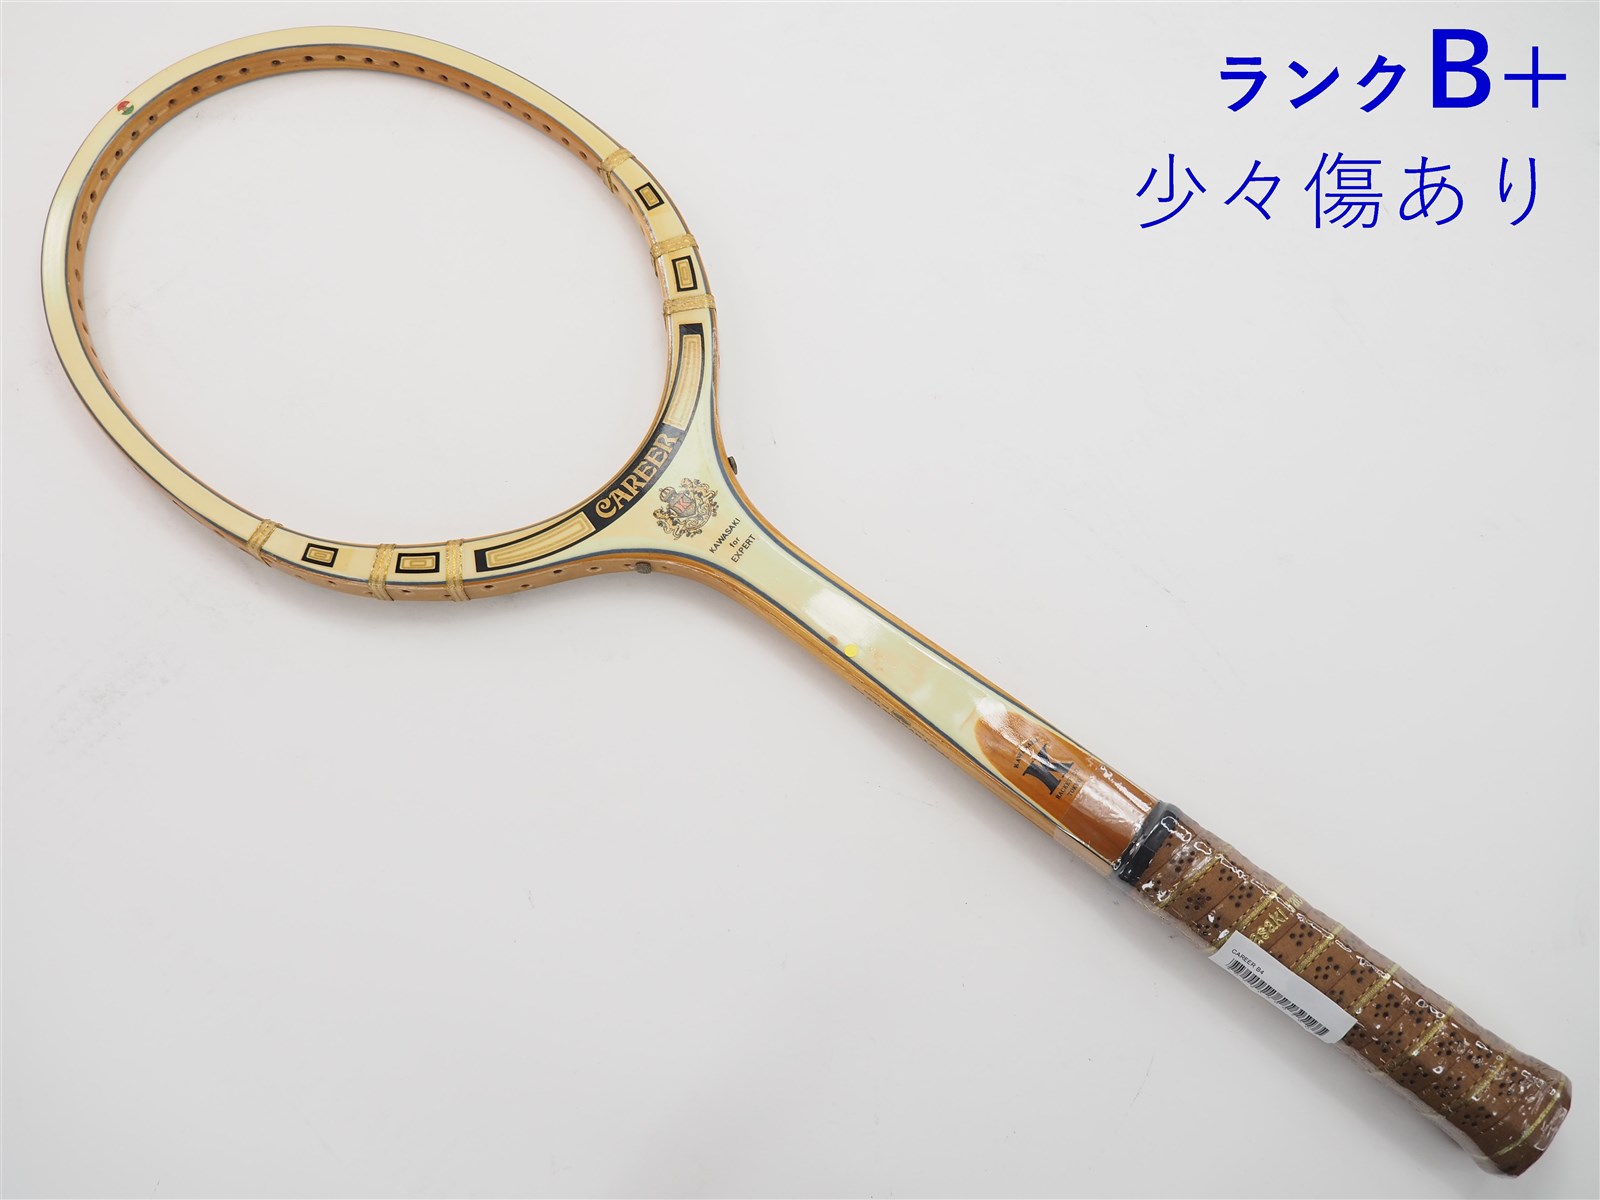 【中古】カワサキ キャリアーKAWASAKI CAREER(B4)【中古 テニスラケット】【送料無料】の通販・販売| カワサキ| テニス サポートセンターへ